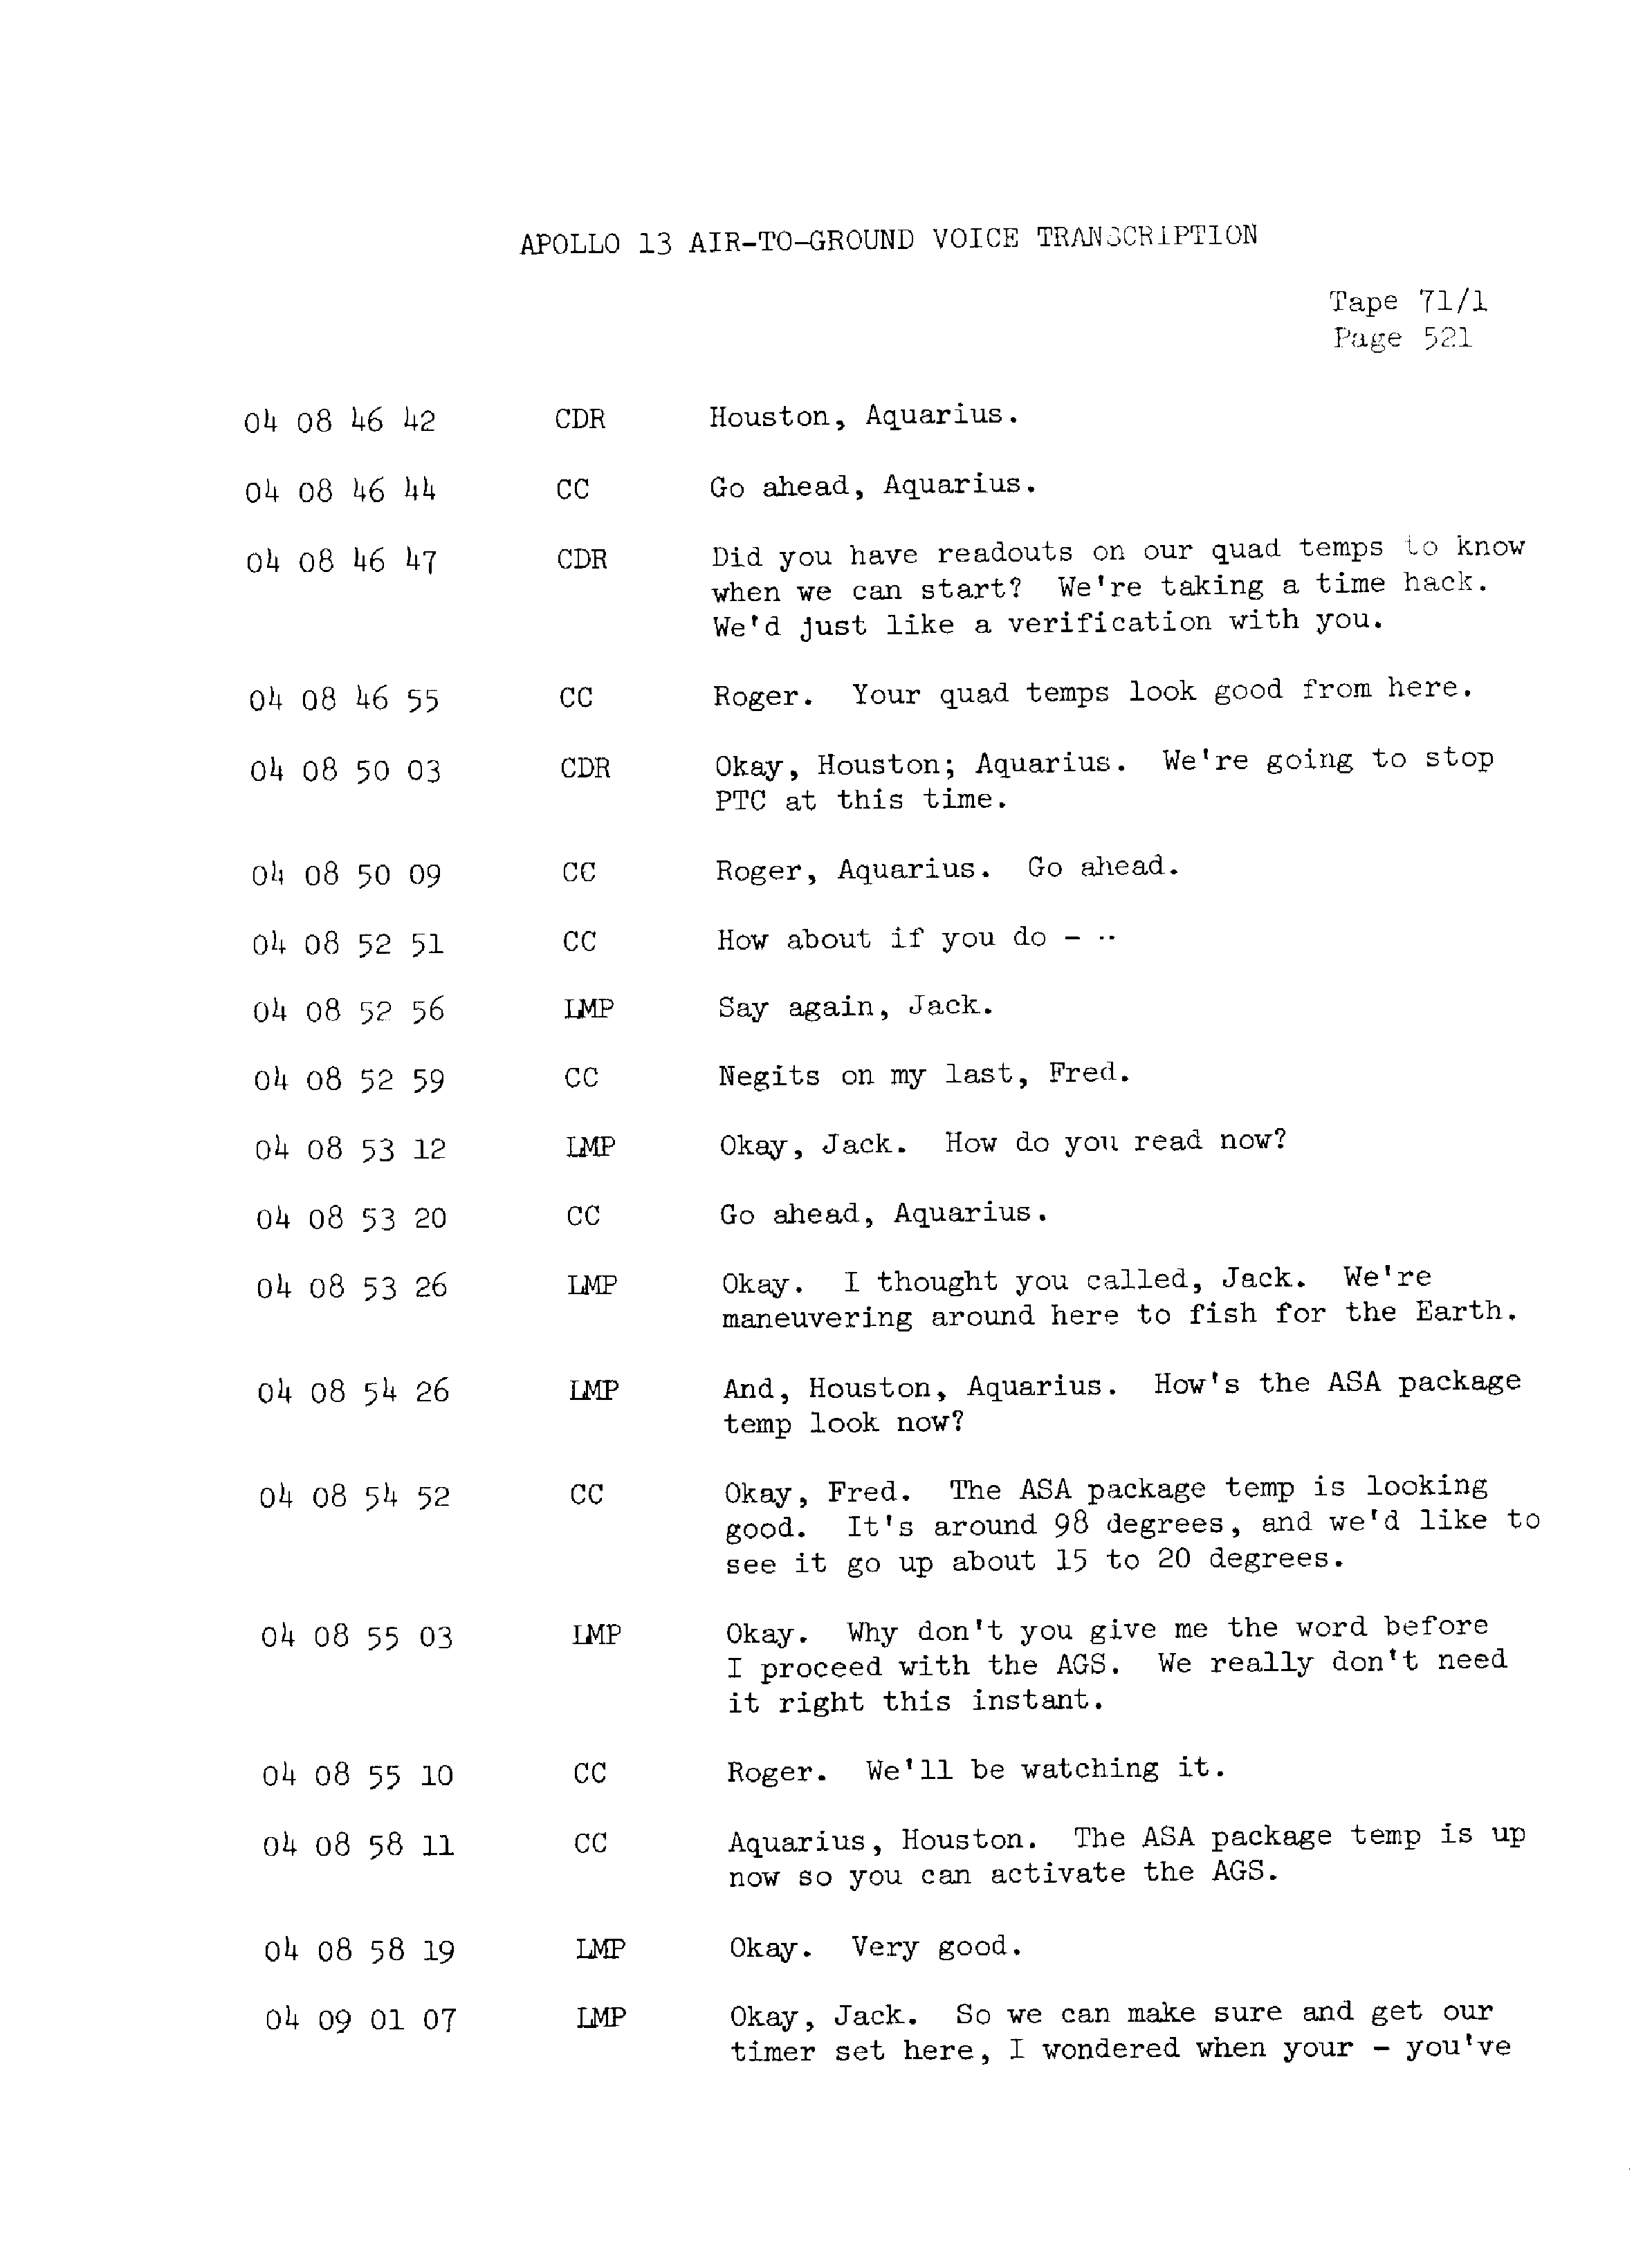 Page 528 of Apollo 13’s original transcript